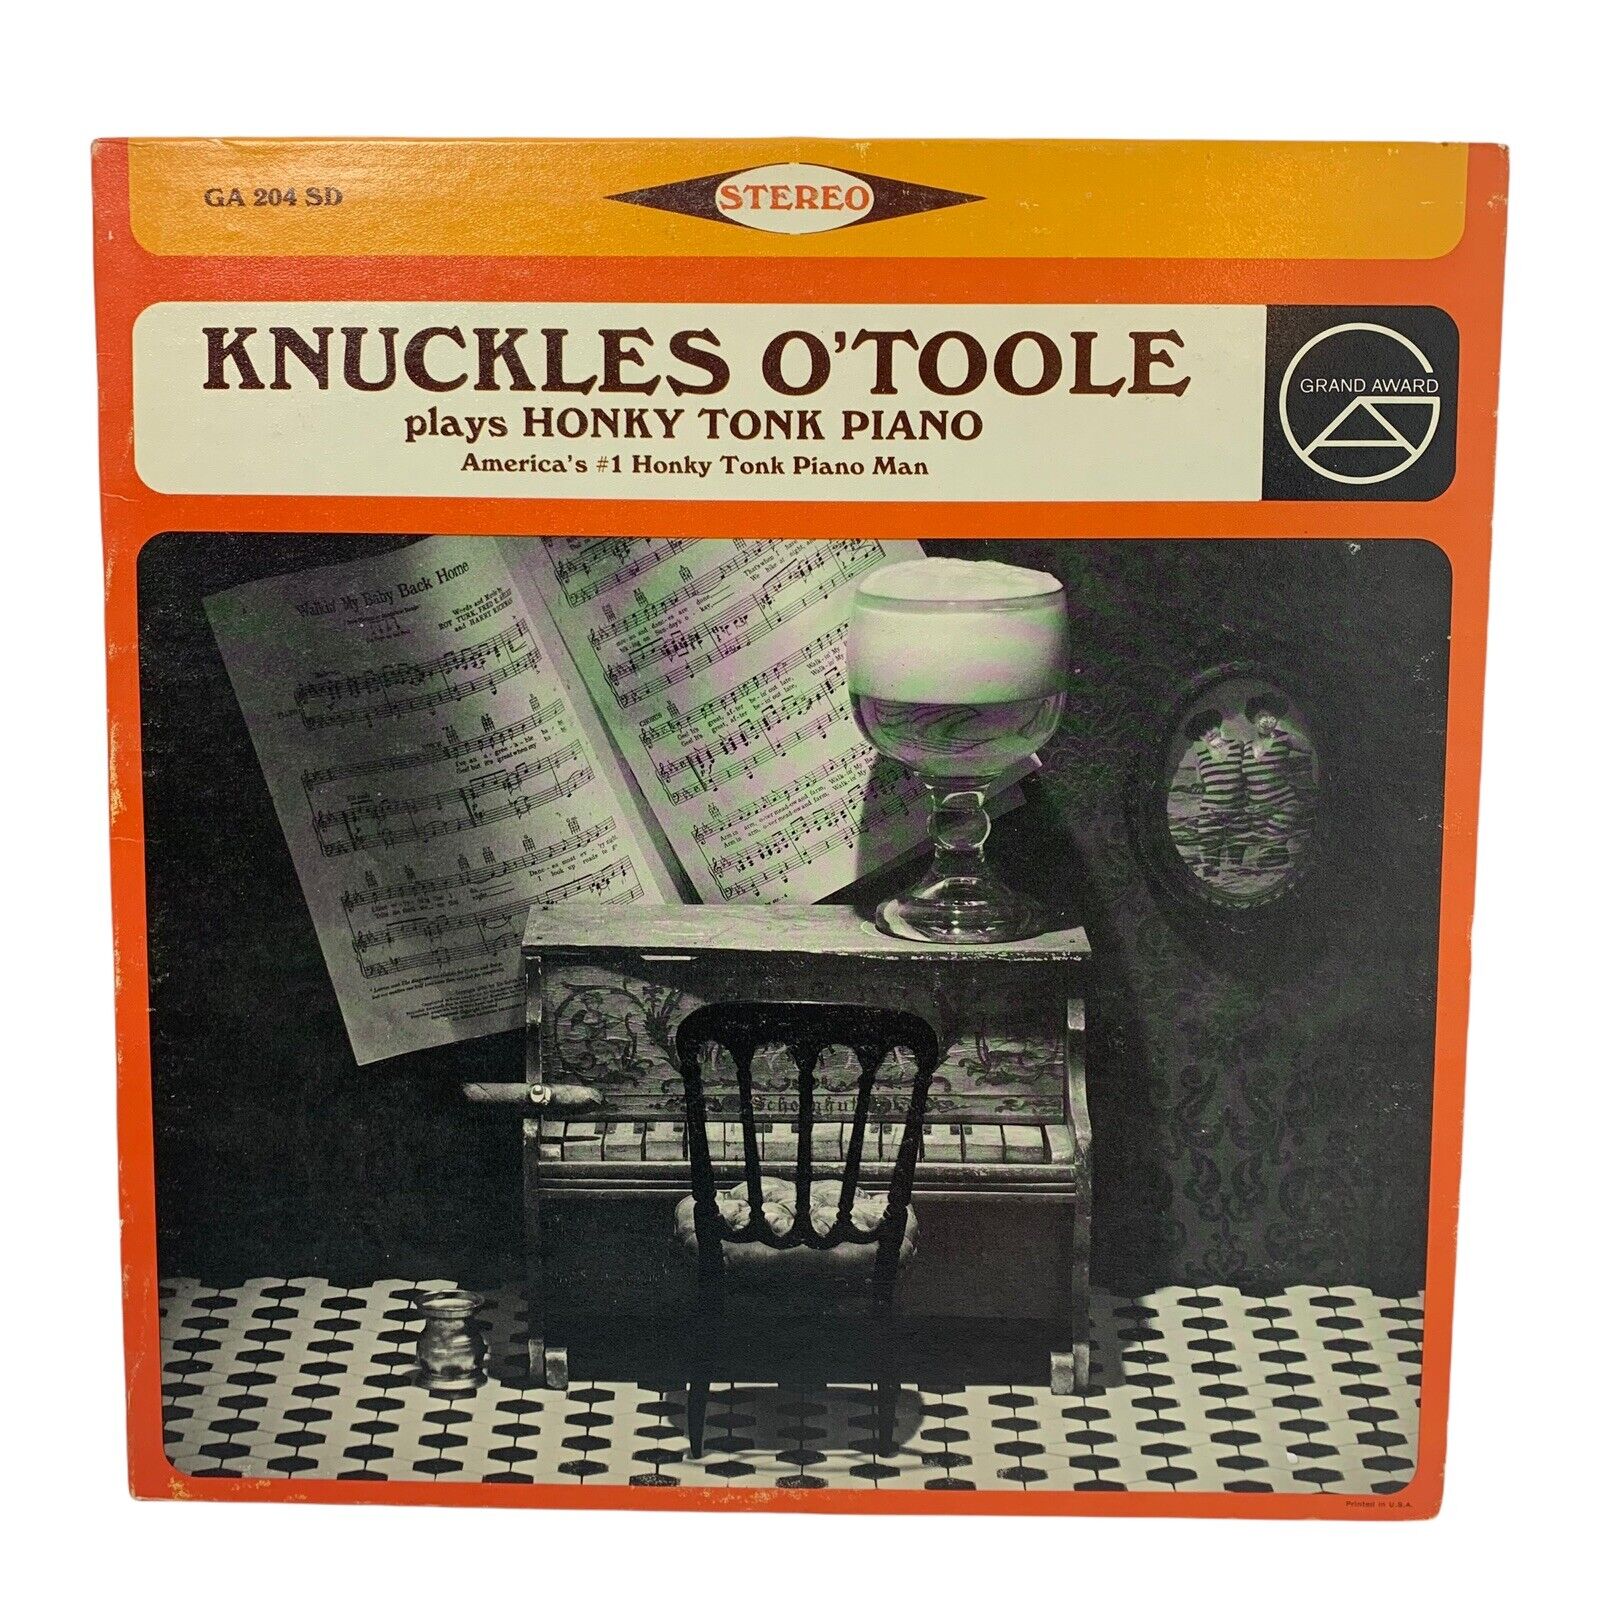 Knuckles O’Toole Plays Honky Tonk Piano Vinyl GA 204 SD 1966 VG+ Scarce